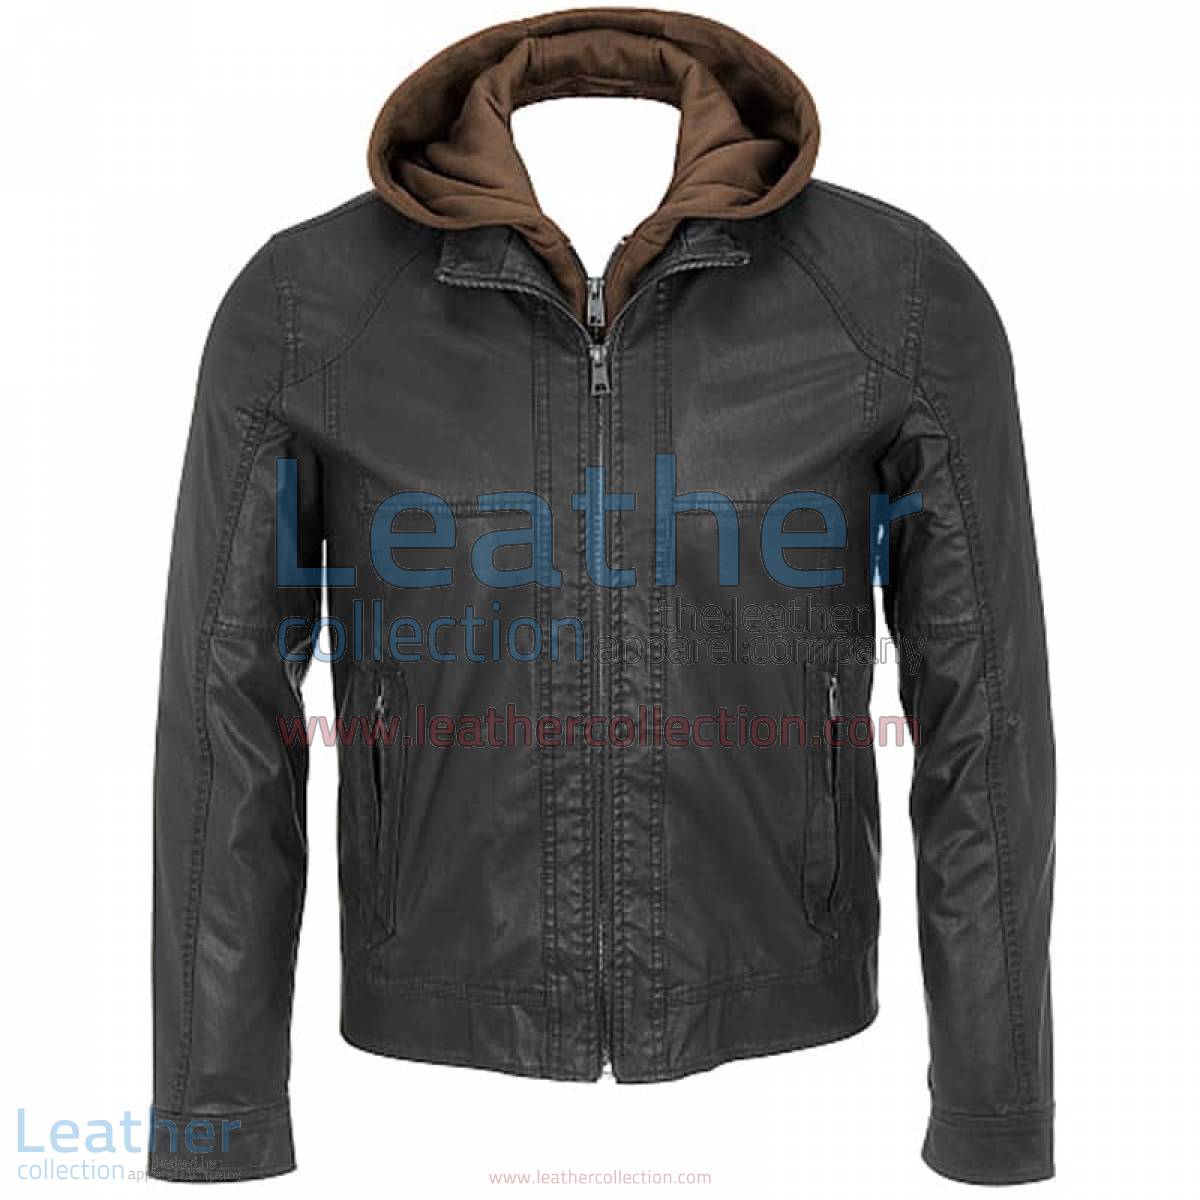 Leather Jacket With Hood | jacket with hood,leather jacket with hood